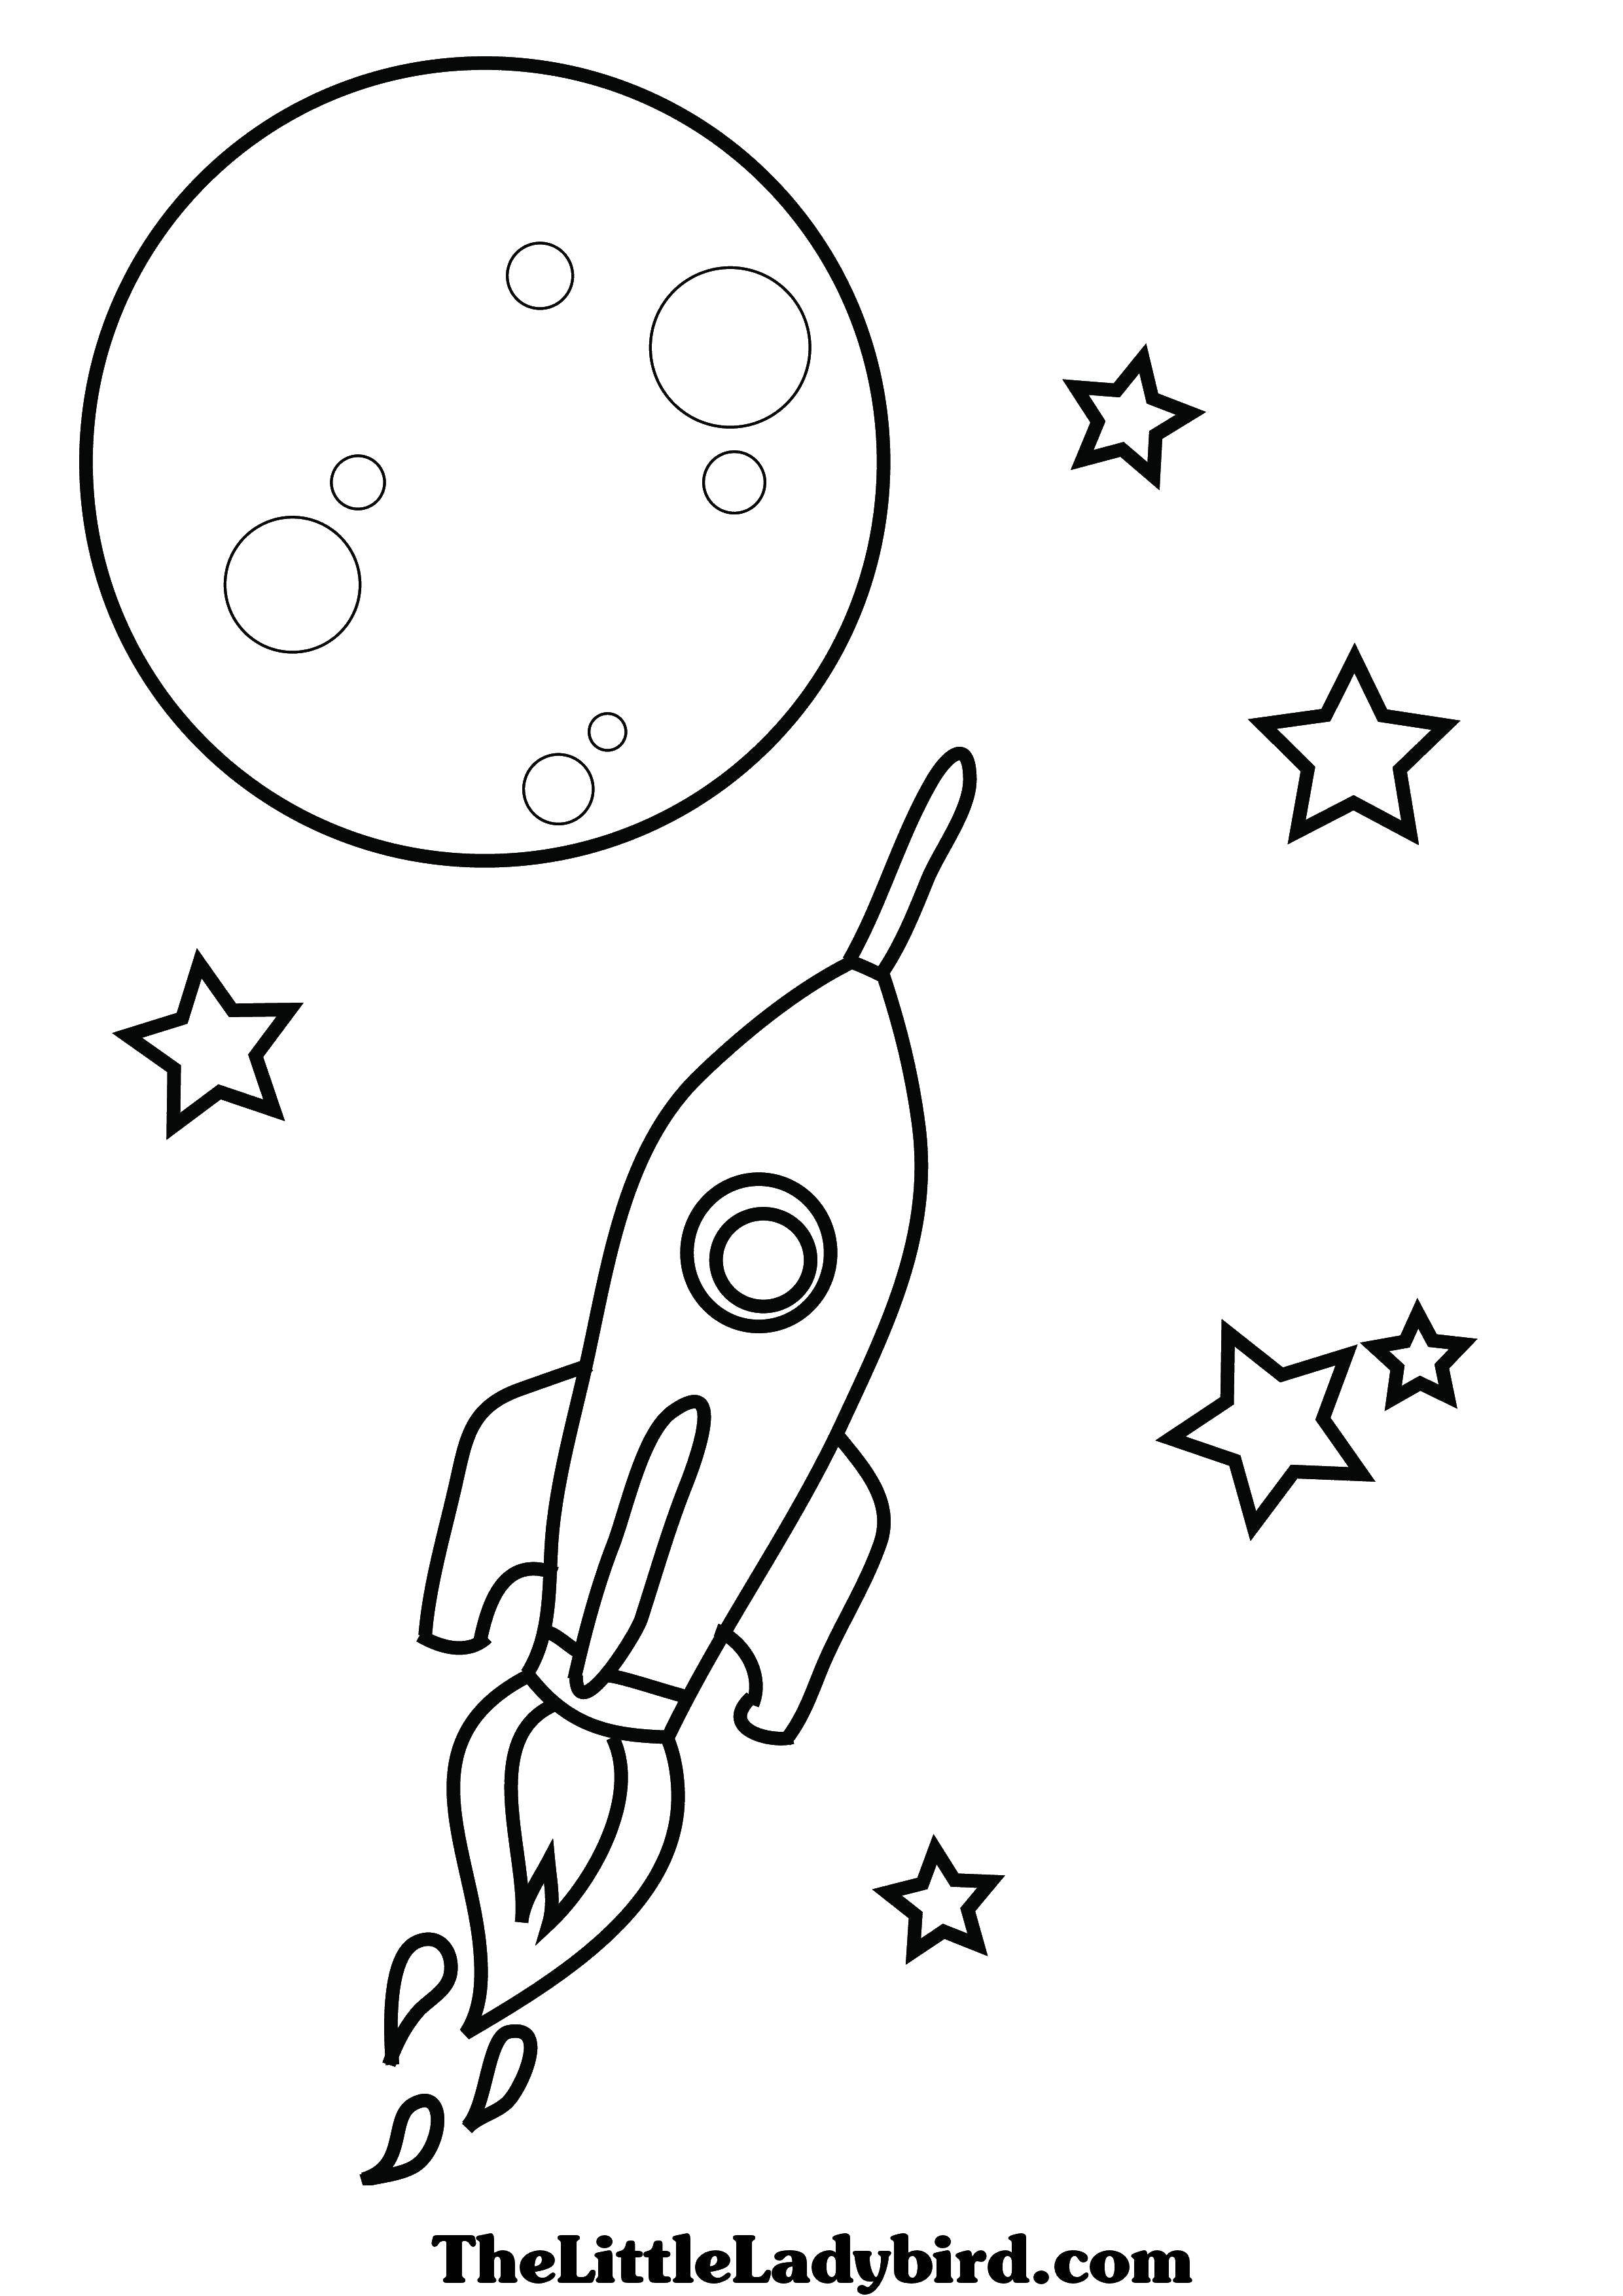 Окна ко дню космонавтики. Ракета раскраска. Космос раскраска для детей. Ракета раскраска для детей. Раскраска для малышей. Космос.